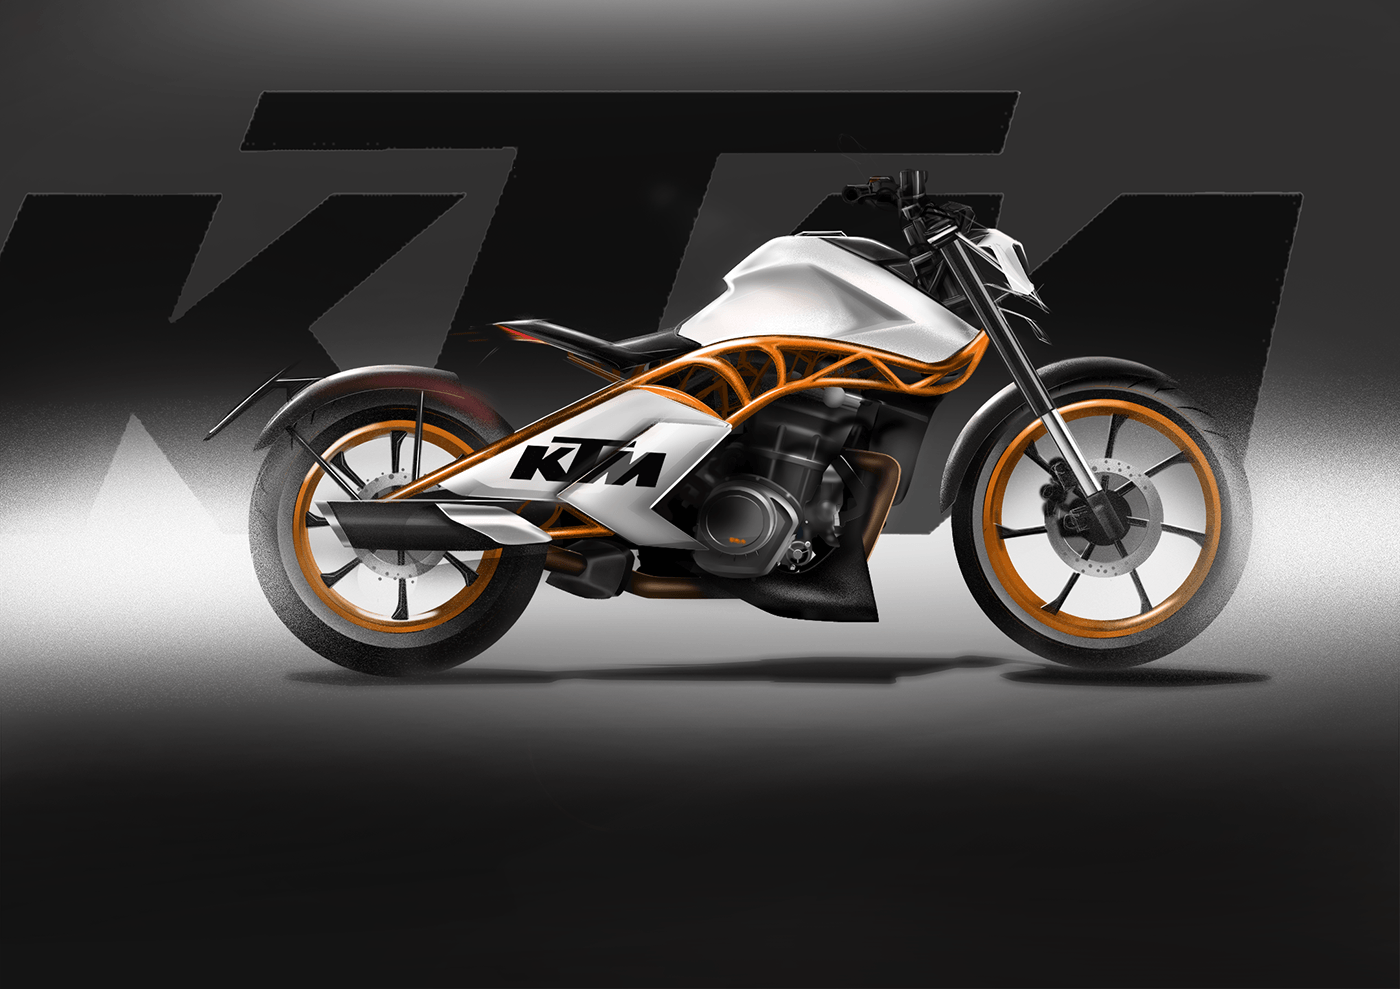 ktm india bike rendering transportationdesign automotivedesign automotive rendering bikedesign bobber motorcycle Bobber renders KTM Design KTM design project